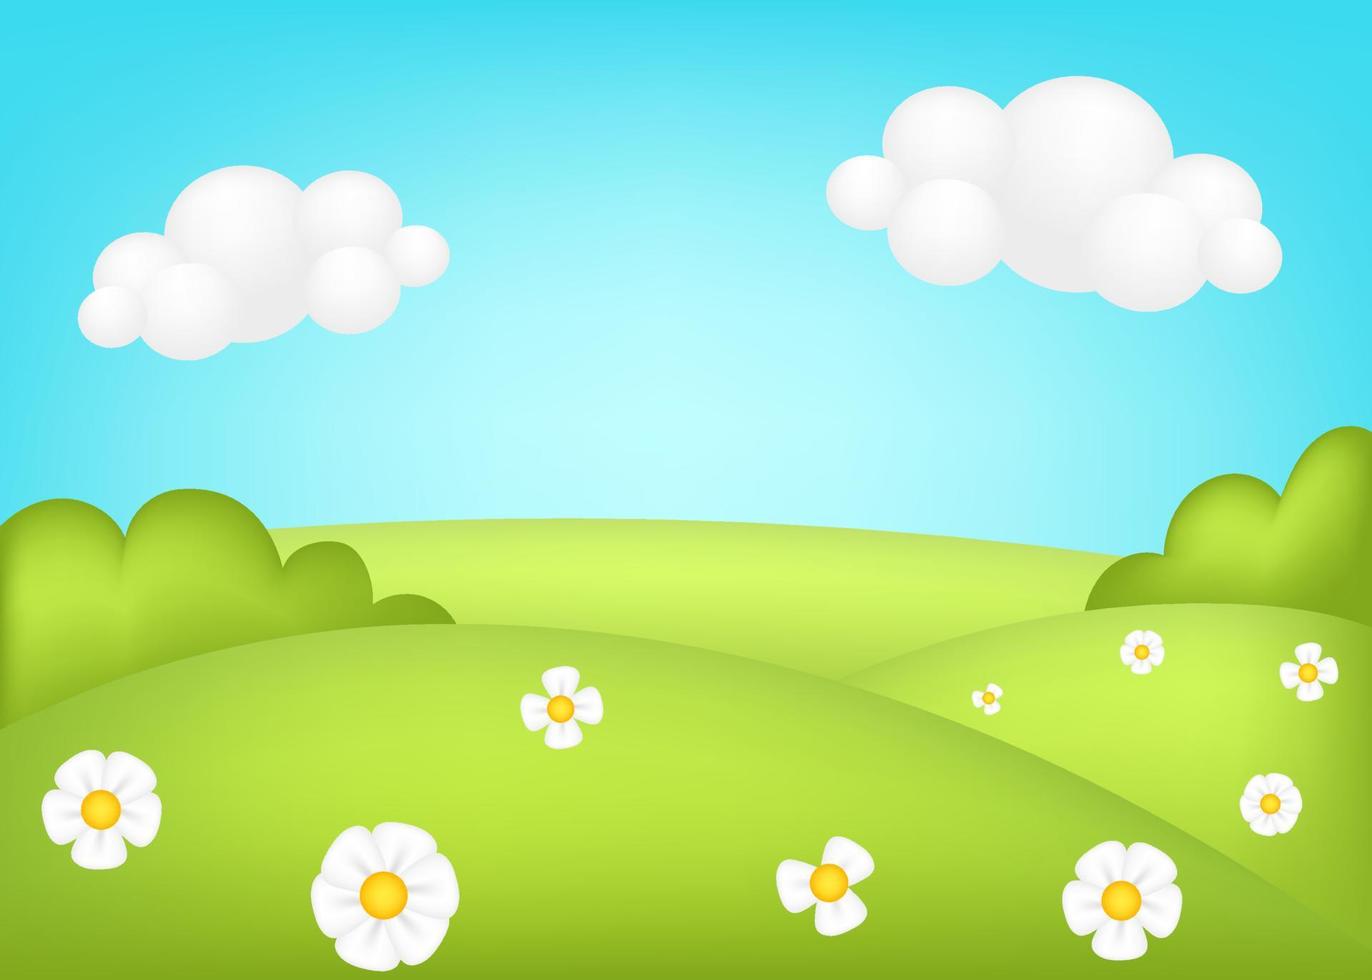 pradera 3d ilustración vectorial. brillante paisaje de fondo verde de los niños del valle. paisaje lindo y colorido con praderas verdes primaverales, árboles, flores, cielo azul, nubes para sitios infantiles. vector